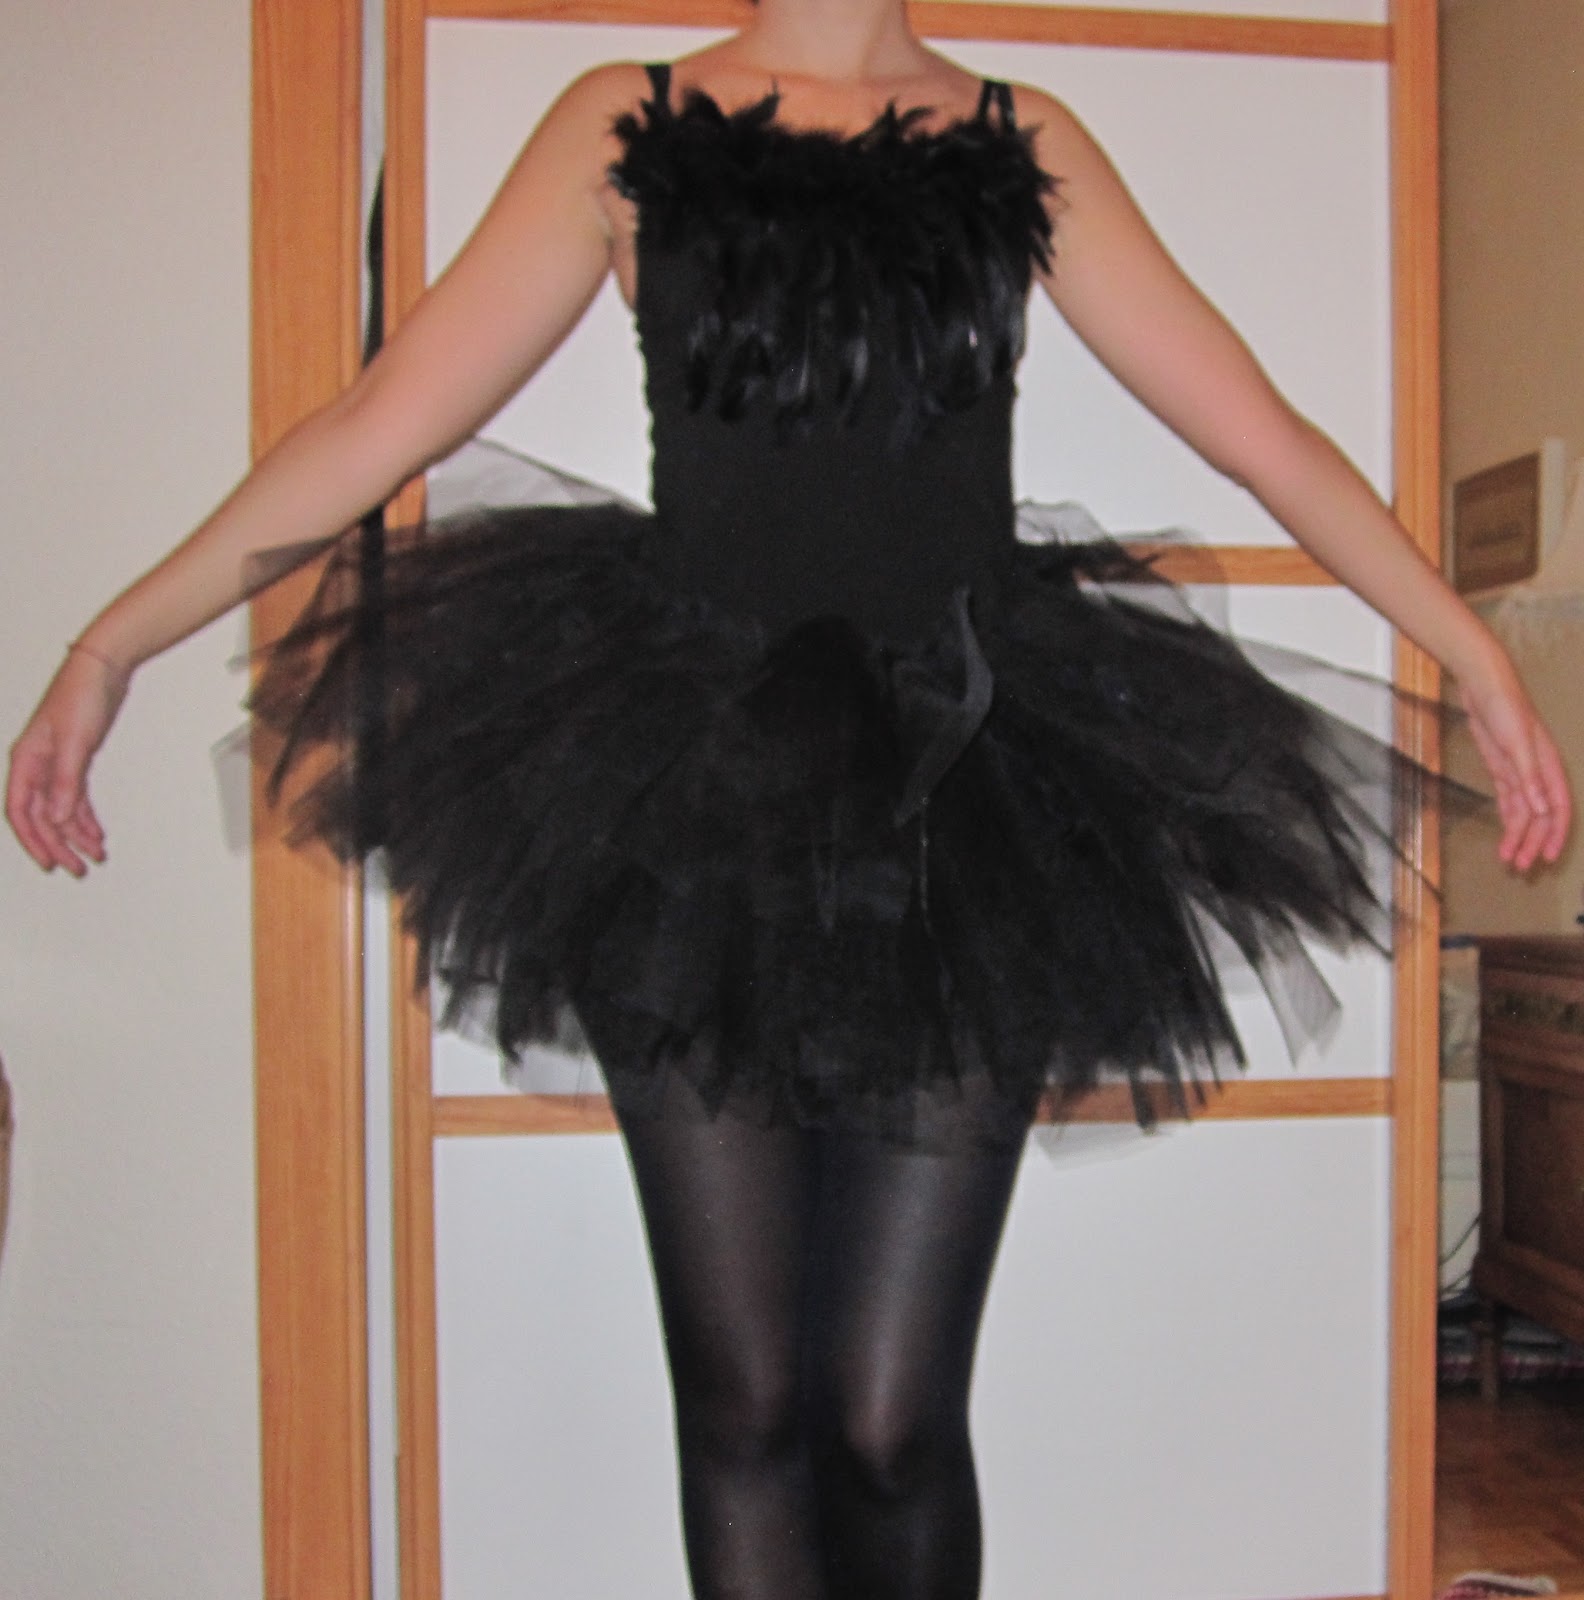 Oceano Dictar rosario El arte de las cosas nimias: Esto es Halloween: DIY disfraz de cisne negro  (Black Swan) la película